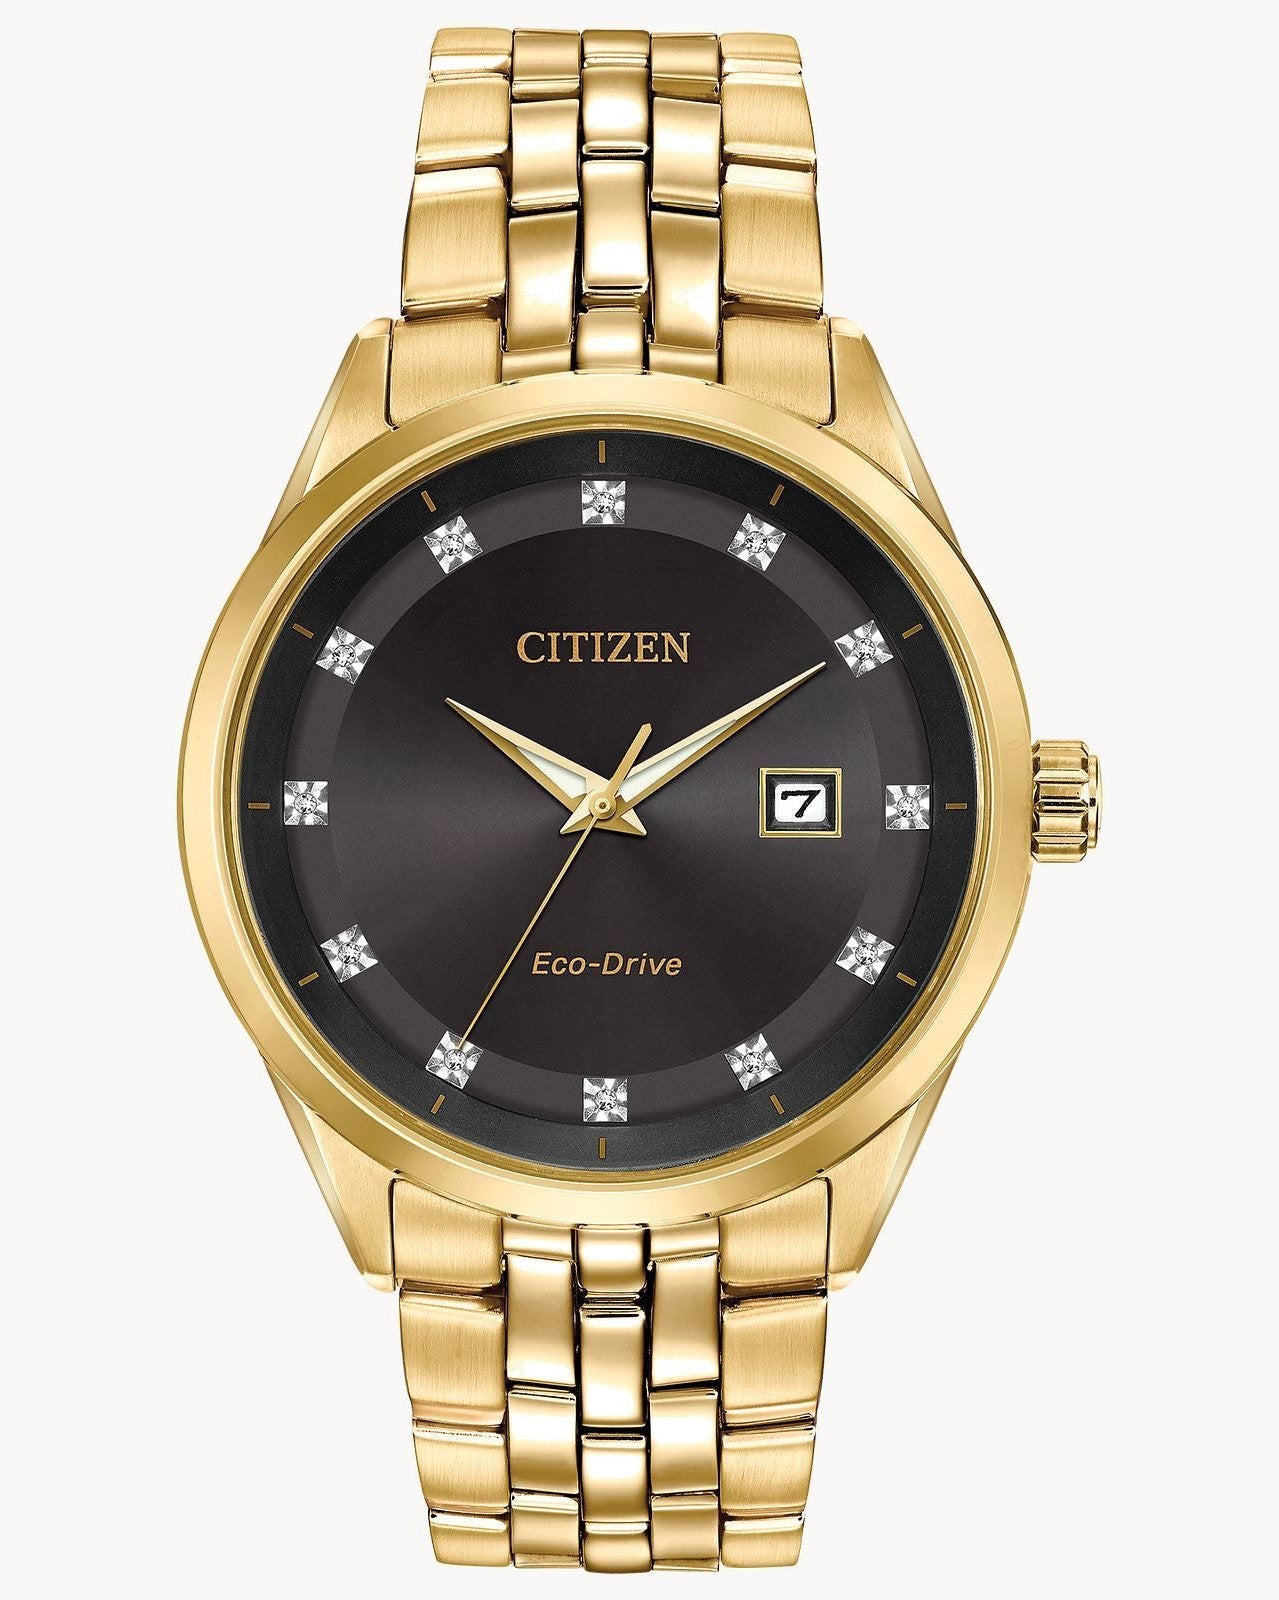 Citizen Eco-Drive Corso Gold-Tone Diamond Accents Watch (Model BM7252-51G)